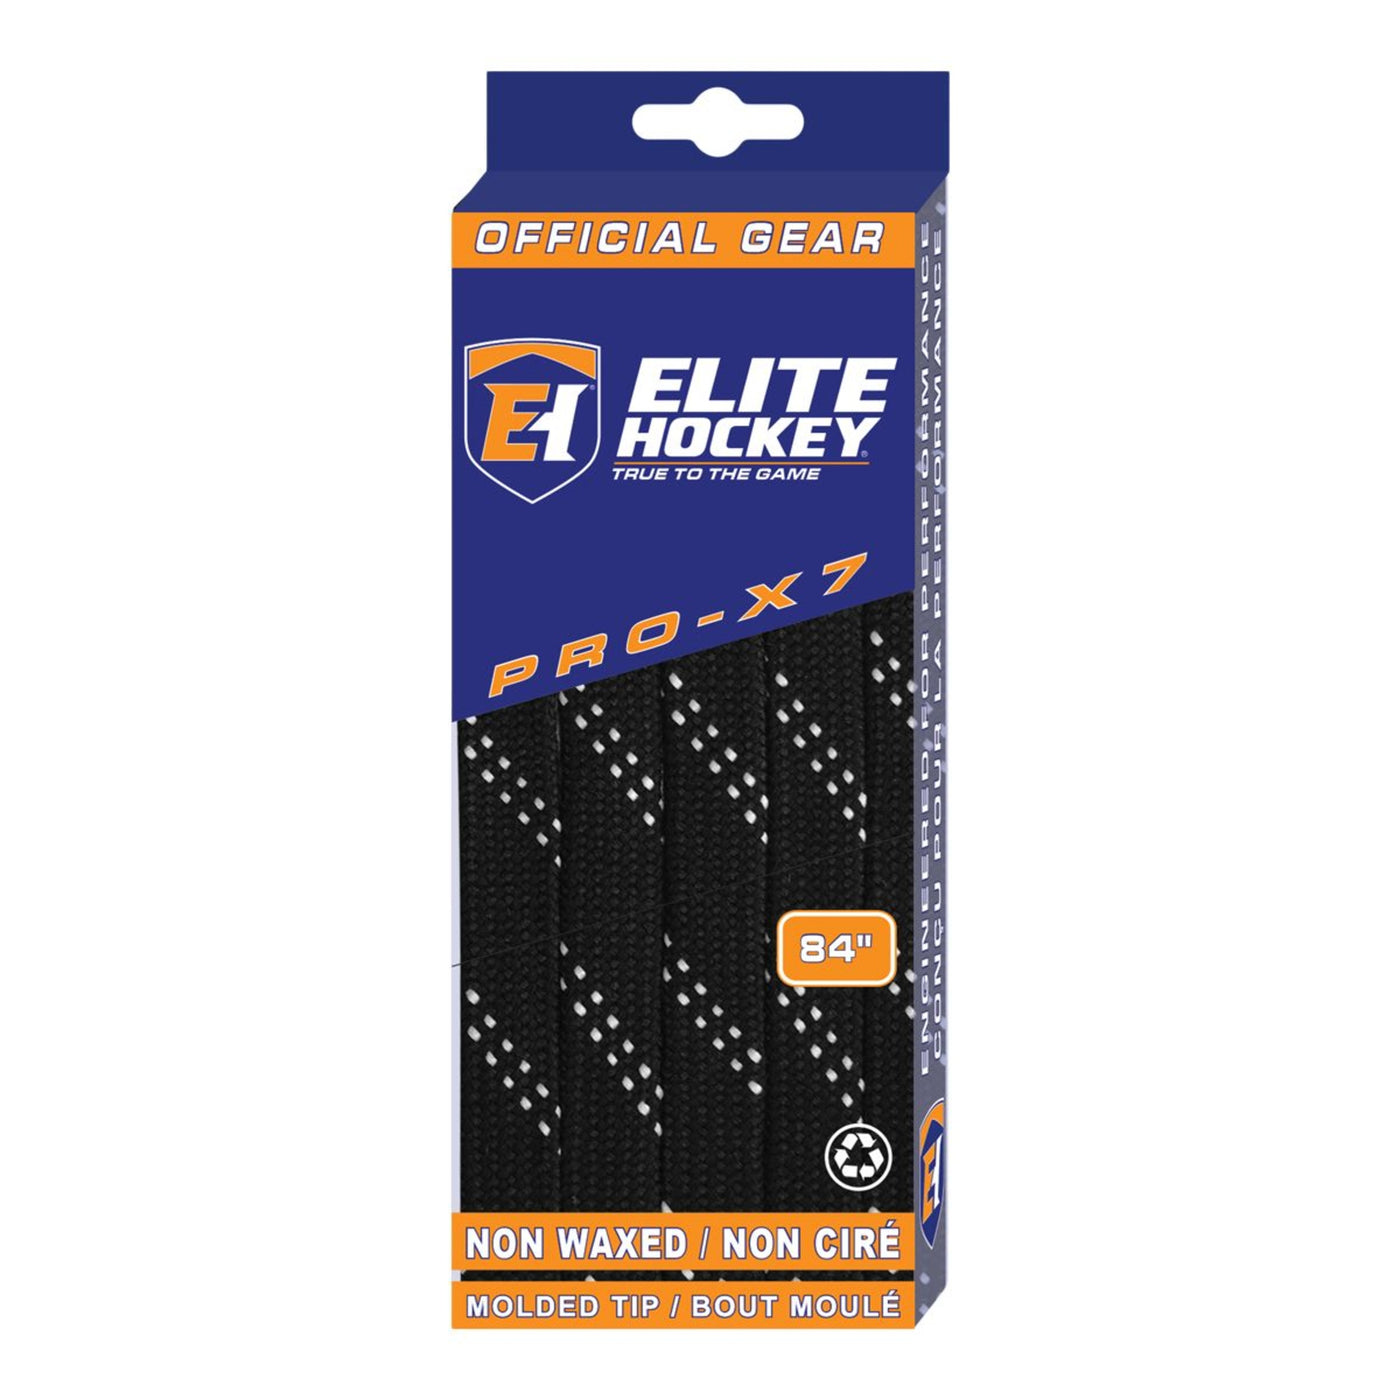 Elite Hockey Pro-X7 Unwaxed Laces